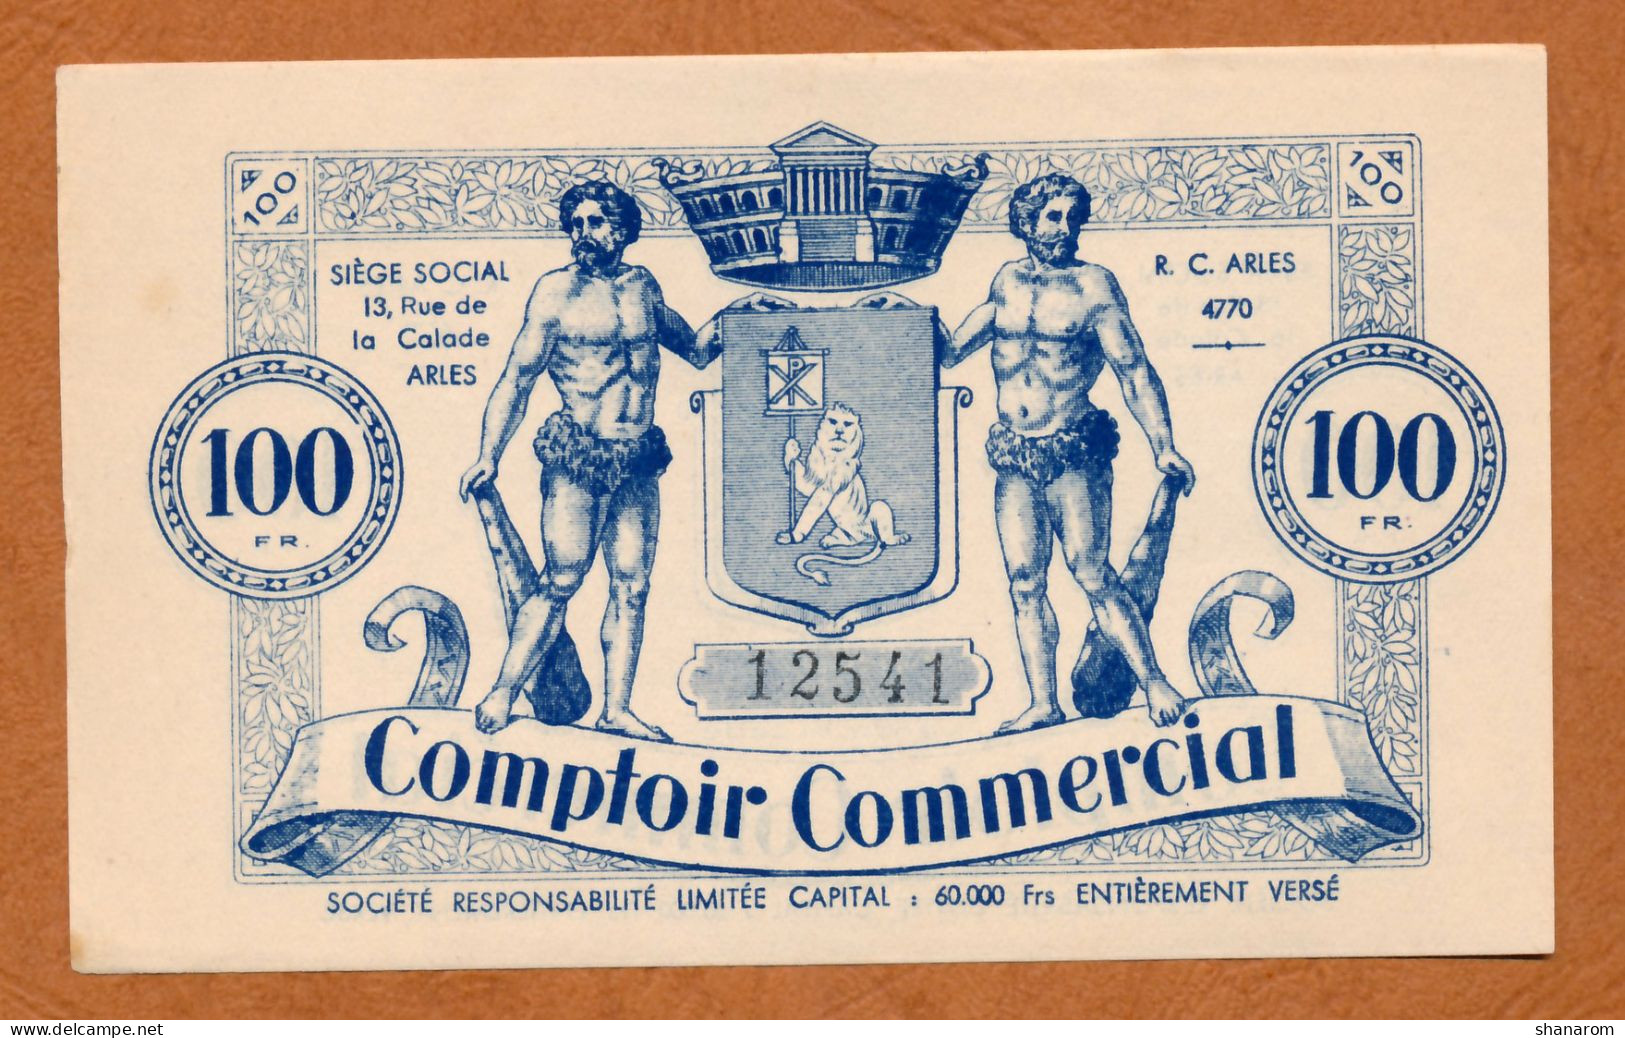 BON COMMERCIAL // BOUCHES DU RHÔNE // COMPTOIR COMMERCIAL // Bon De Cent Francs - Bonds & Basic Needs